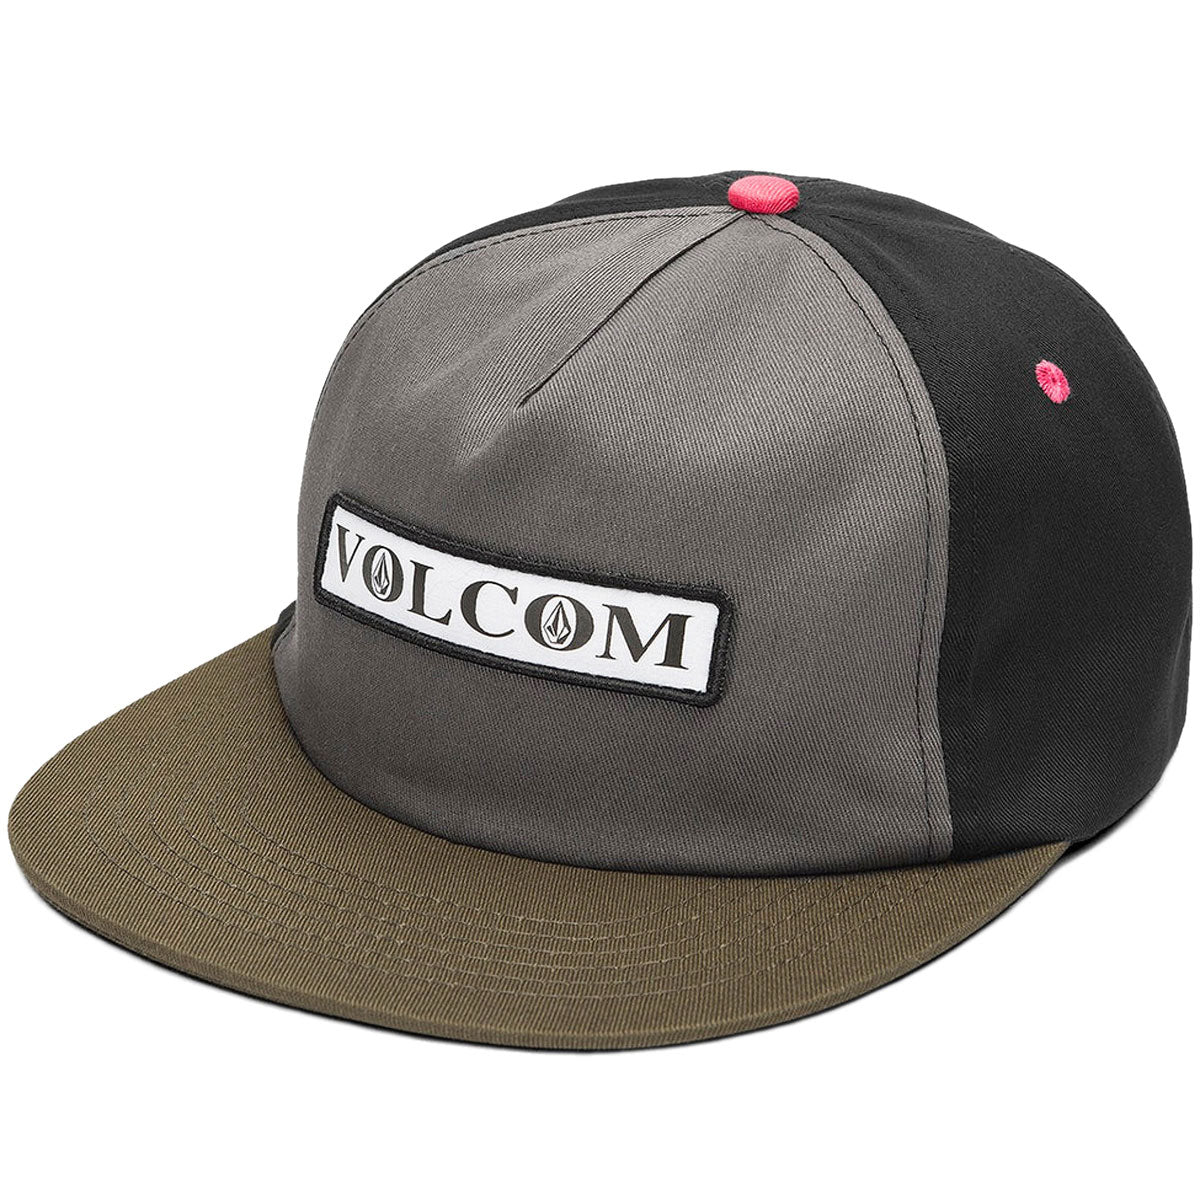 Volcom V Ent Hockey Dad Adjustable Hat - Pewter image 1